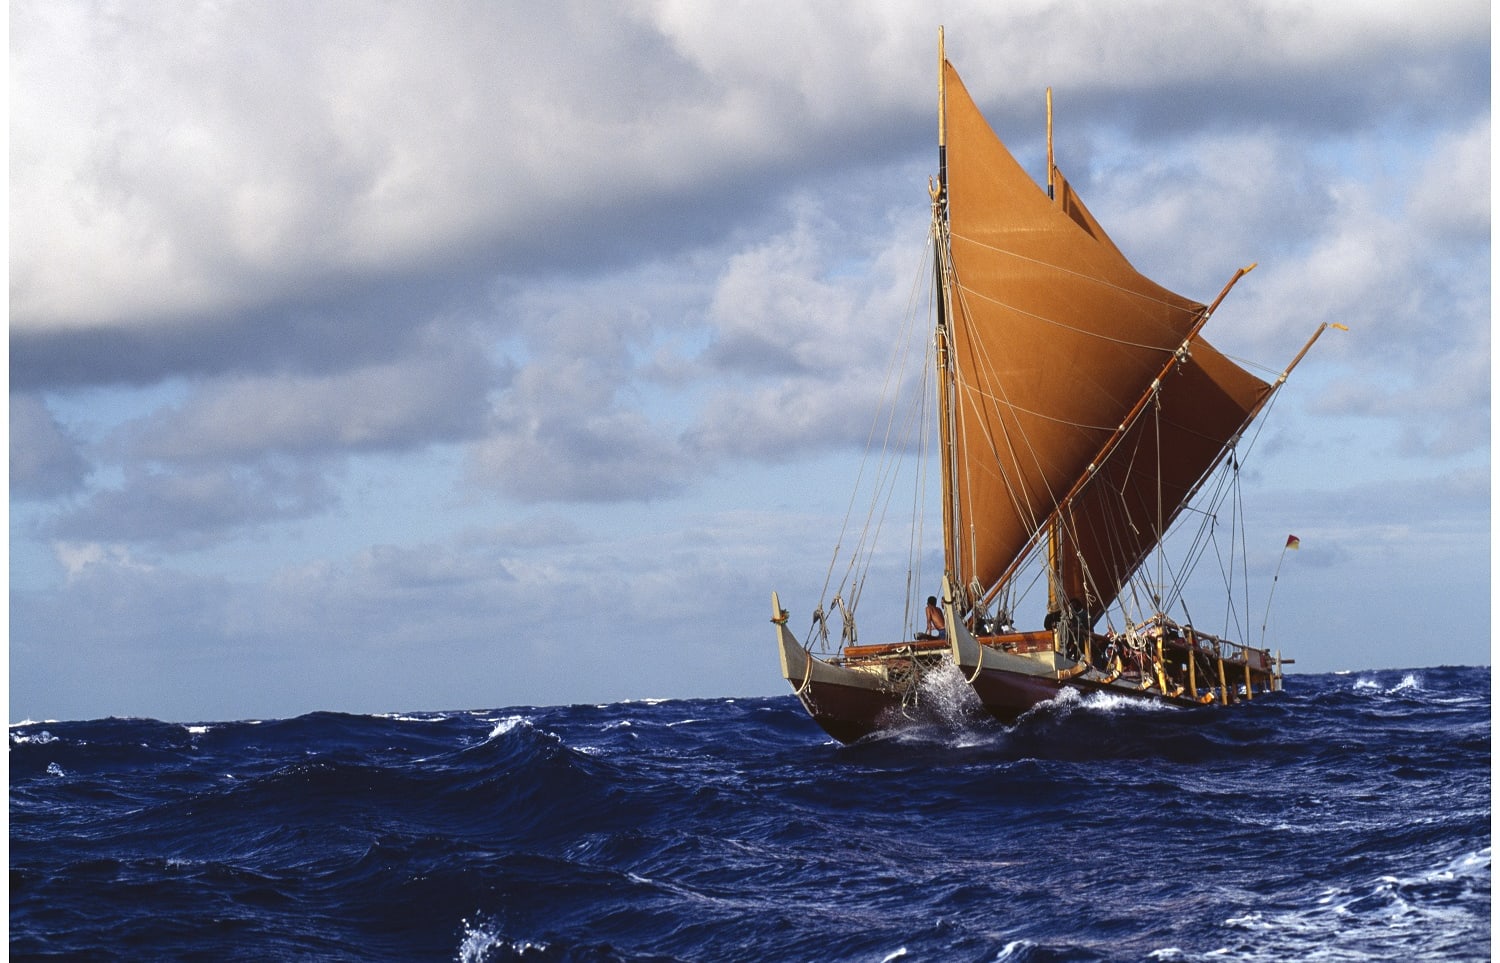 Hōkūle`a in the Ka'iwi Channel off the Coast of O'ahu.